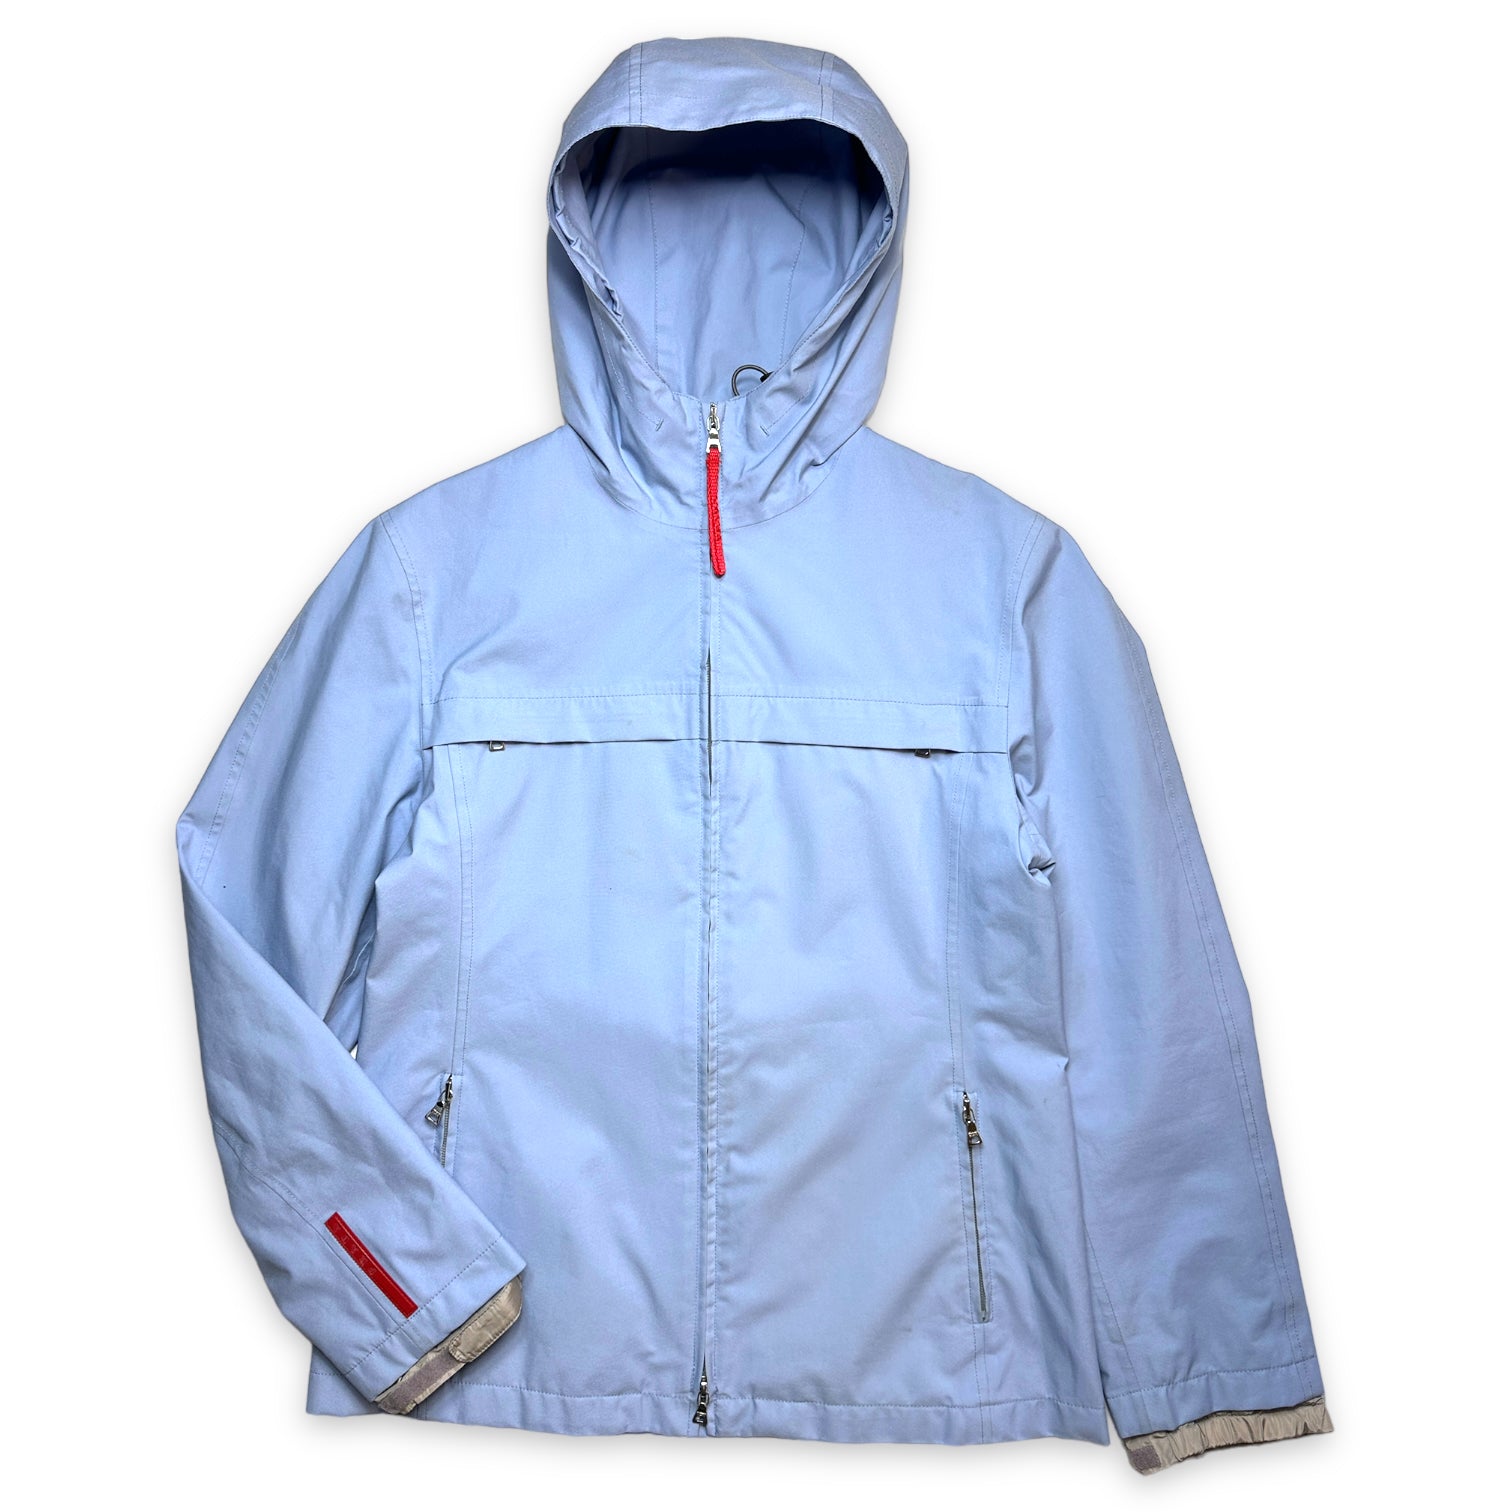 ドローコードはついておりません2000s' Prada sport Gore-Tex nylon jacket